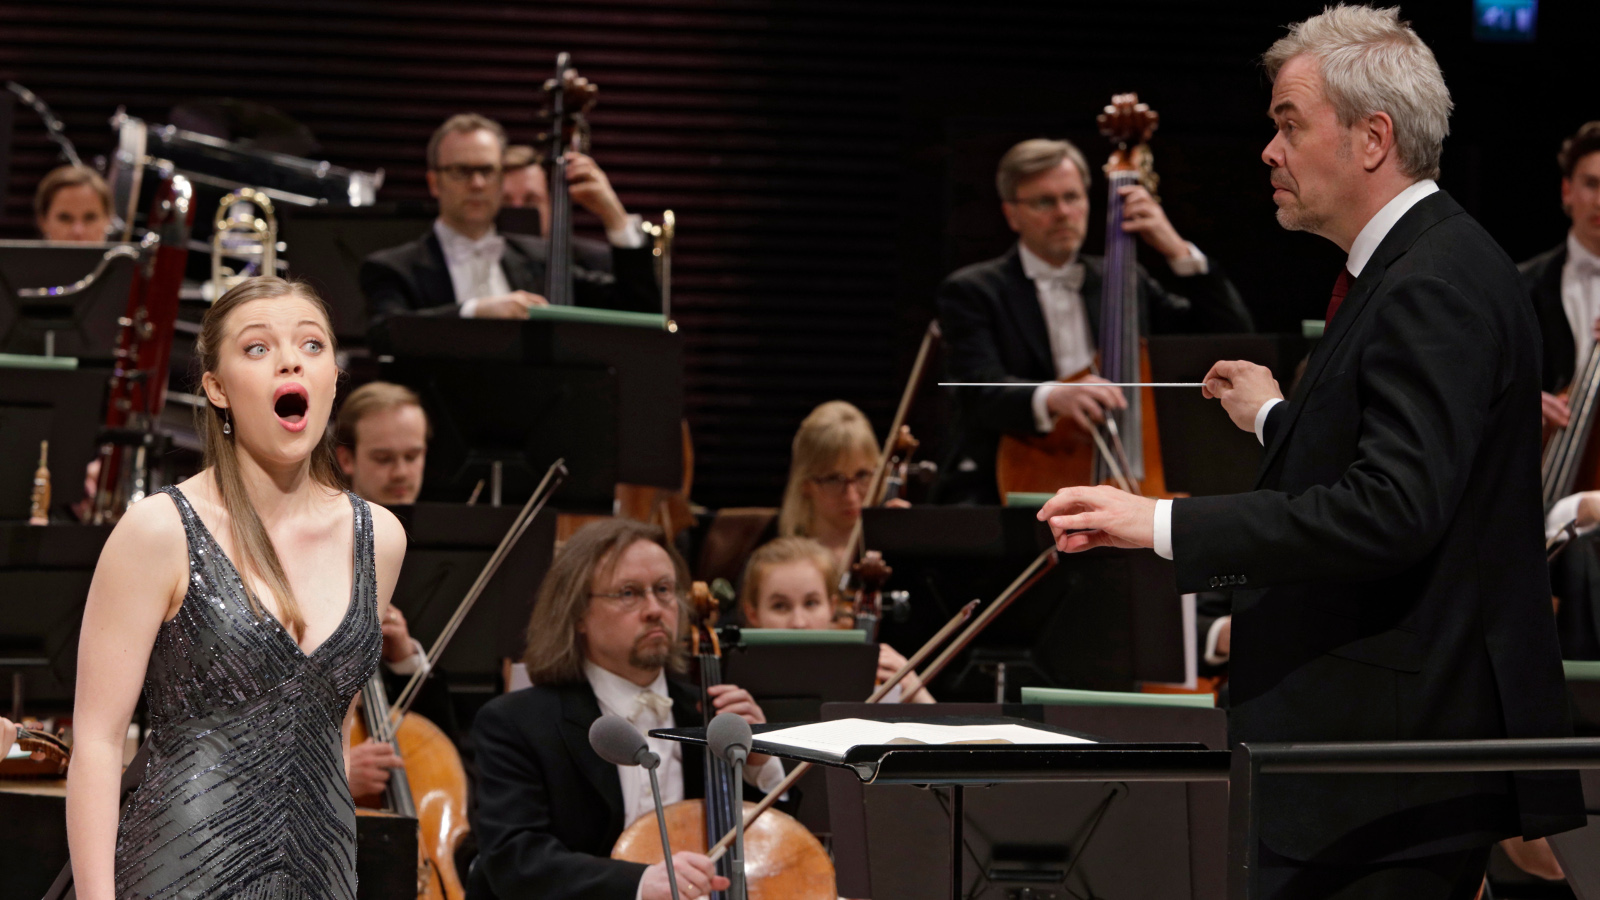 Kuvassa on laulamassa Johanna Wallroth vasemmalla mustassa, kiiltävässä hihattomassa puvussa ja taustalla on orkesteri.  Oikealla selin on Hannu Lintu johtamassa orkesteria.